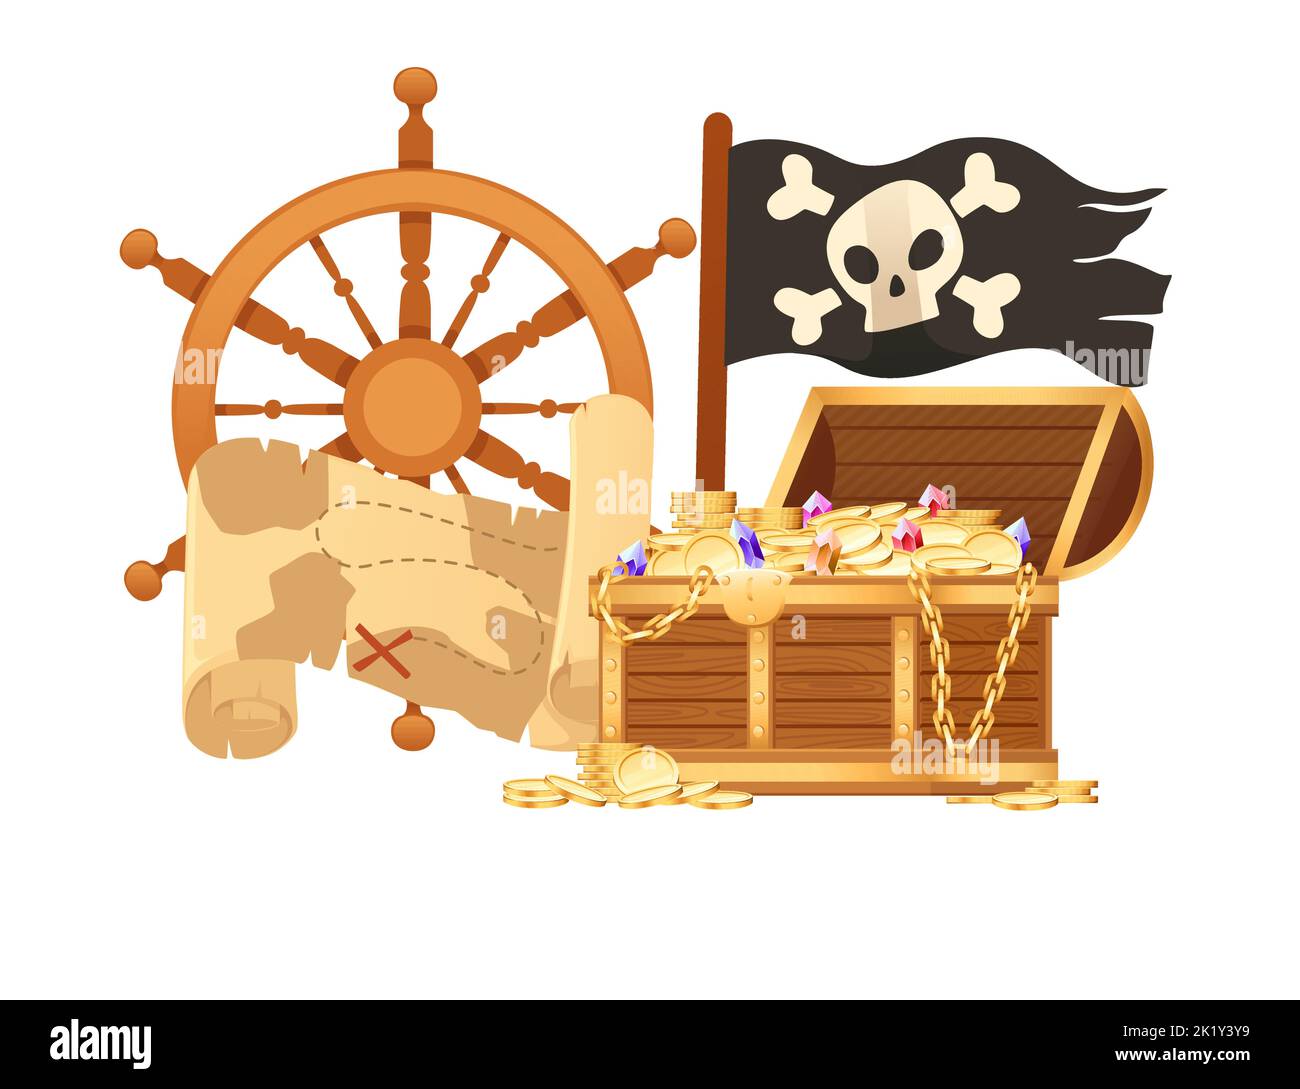 Illustration von Piraten-Thema mit Schatzkarte Hut und hölzernen Brust Vektor-Illustration isoliert auf weißem Hintergrund Stock Vektor